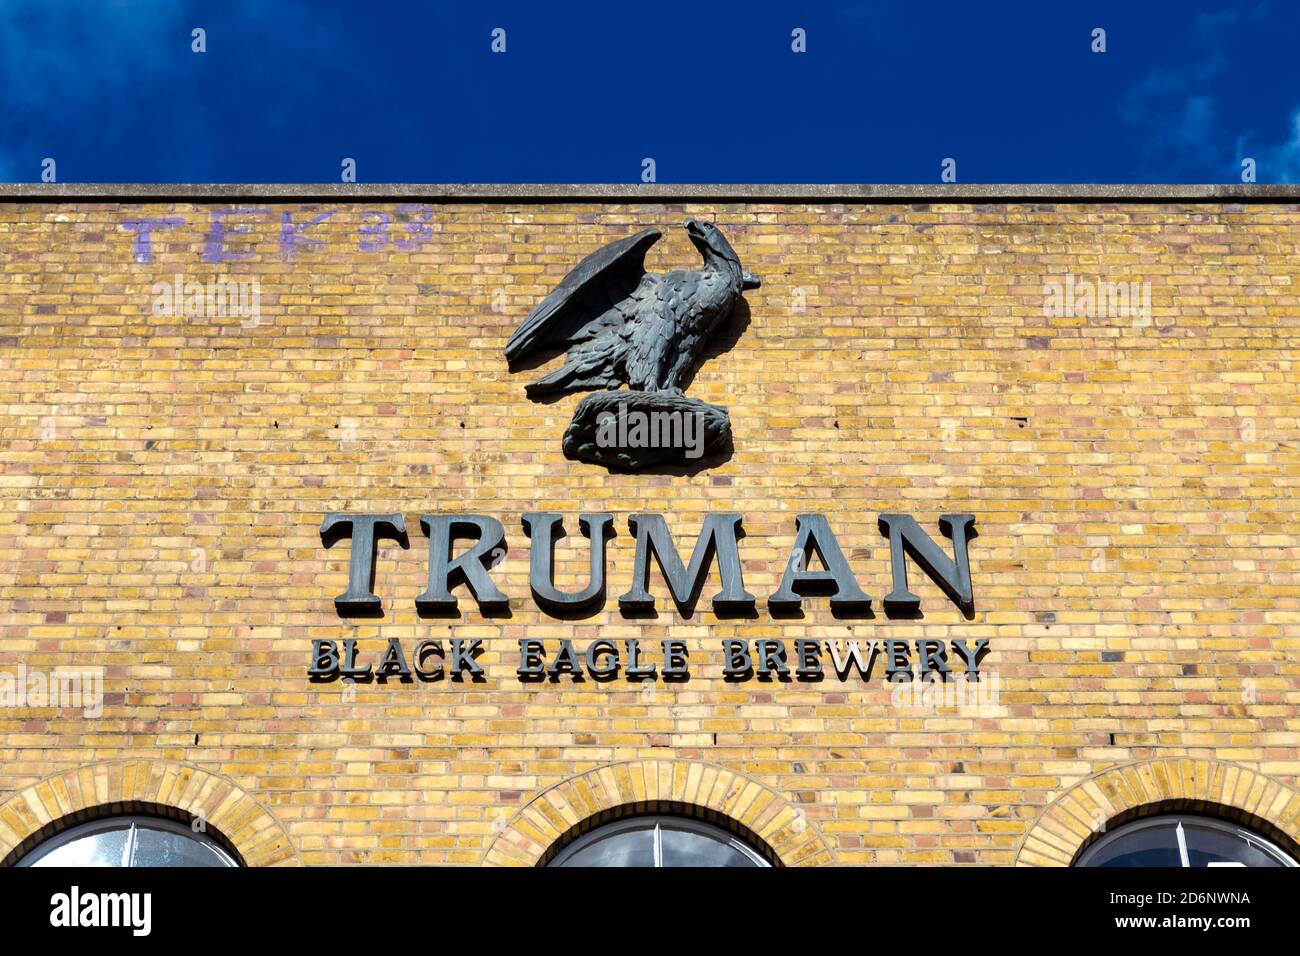 Nahaufnahme des Truman Brewery Logos auf dem umgebauten Brauereigebäude in Brick Lane, East London, Großbritannien Stockfoto